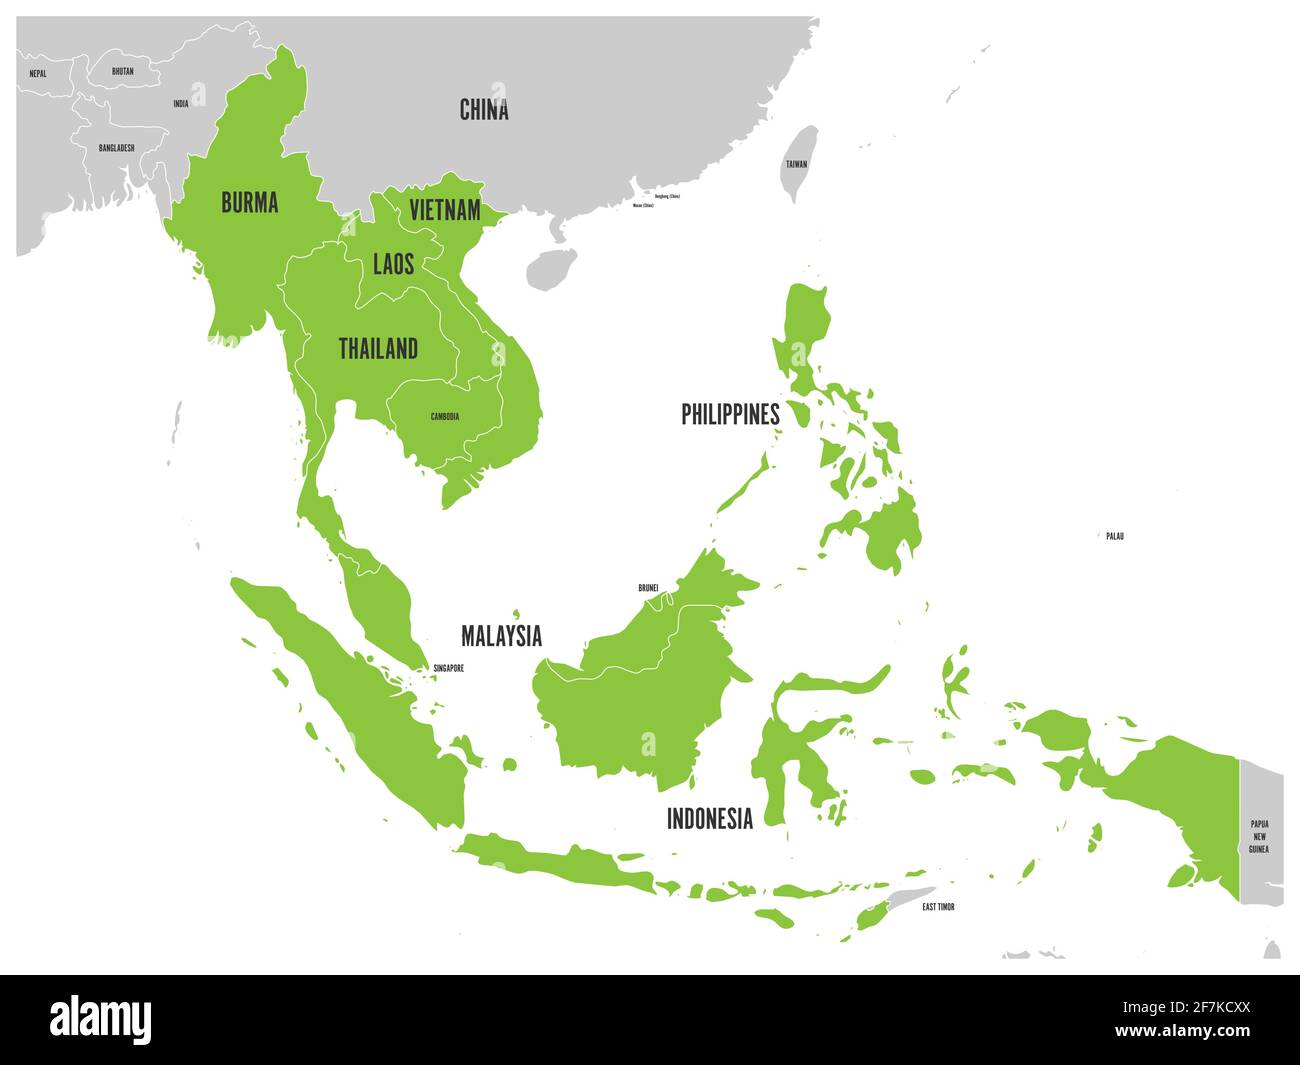 Comunità economica ASEAN, AEC, mappa. Mappa grigia con i paesi membri evidenziati in verde, Sud-est asiatico. Illustrazione vettoriale Illustrazione Vettoriale